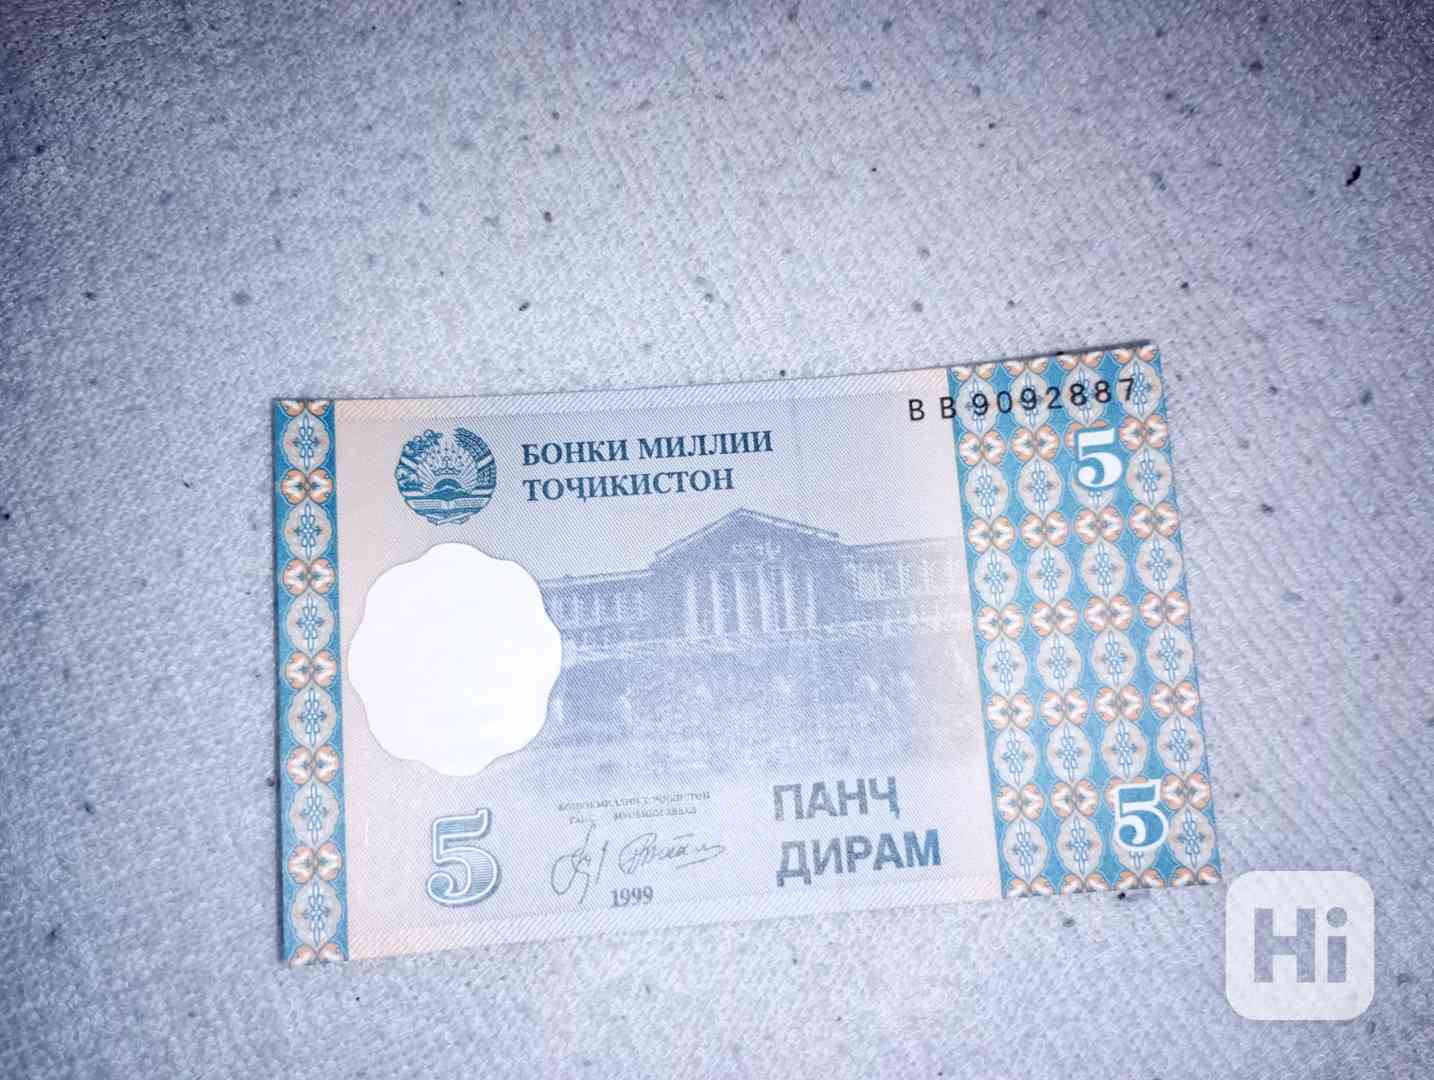 Tádžikistán bankovky - foto 1